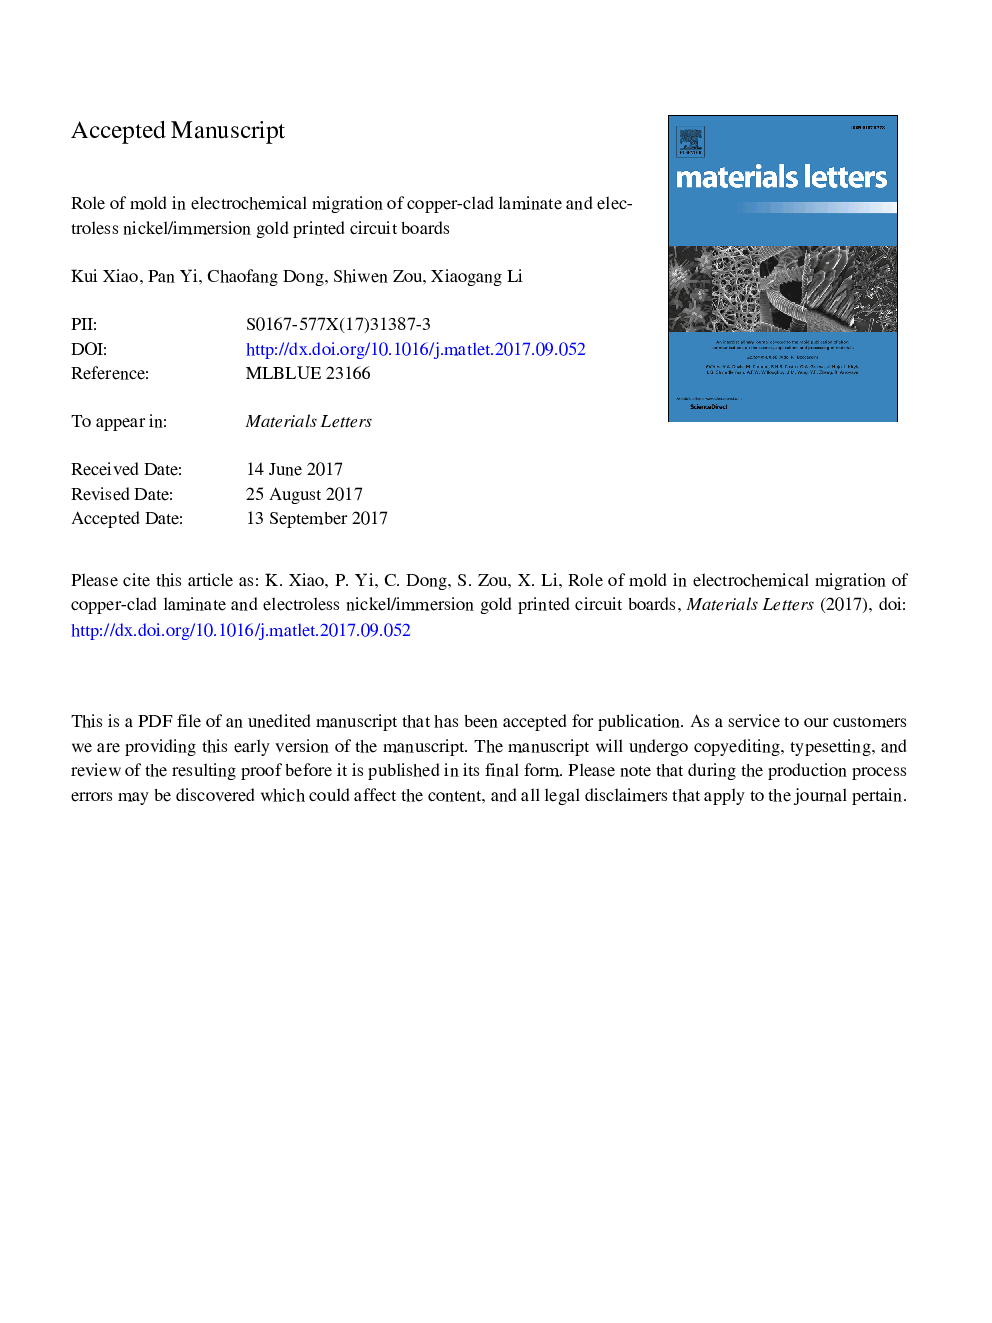 نقش قالب در مهاجرت الکتروشیمیایی ورقه ورقه مس با پوشش مسی و الکترولس نیکل / غوطه وری تابلوهای مدار چاپی